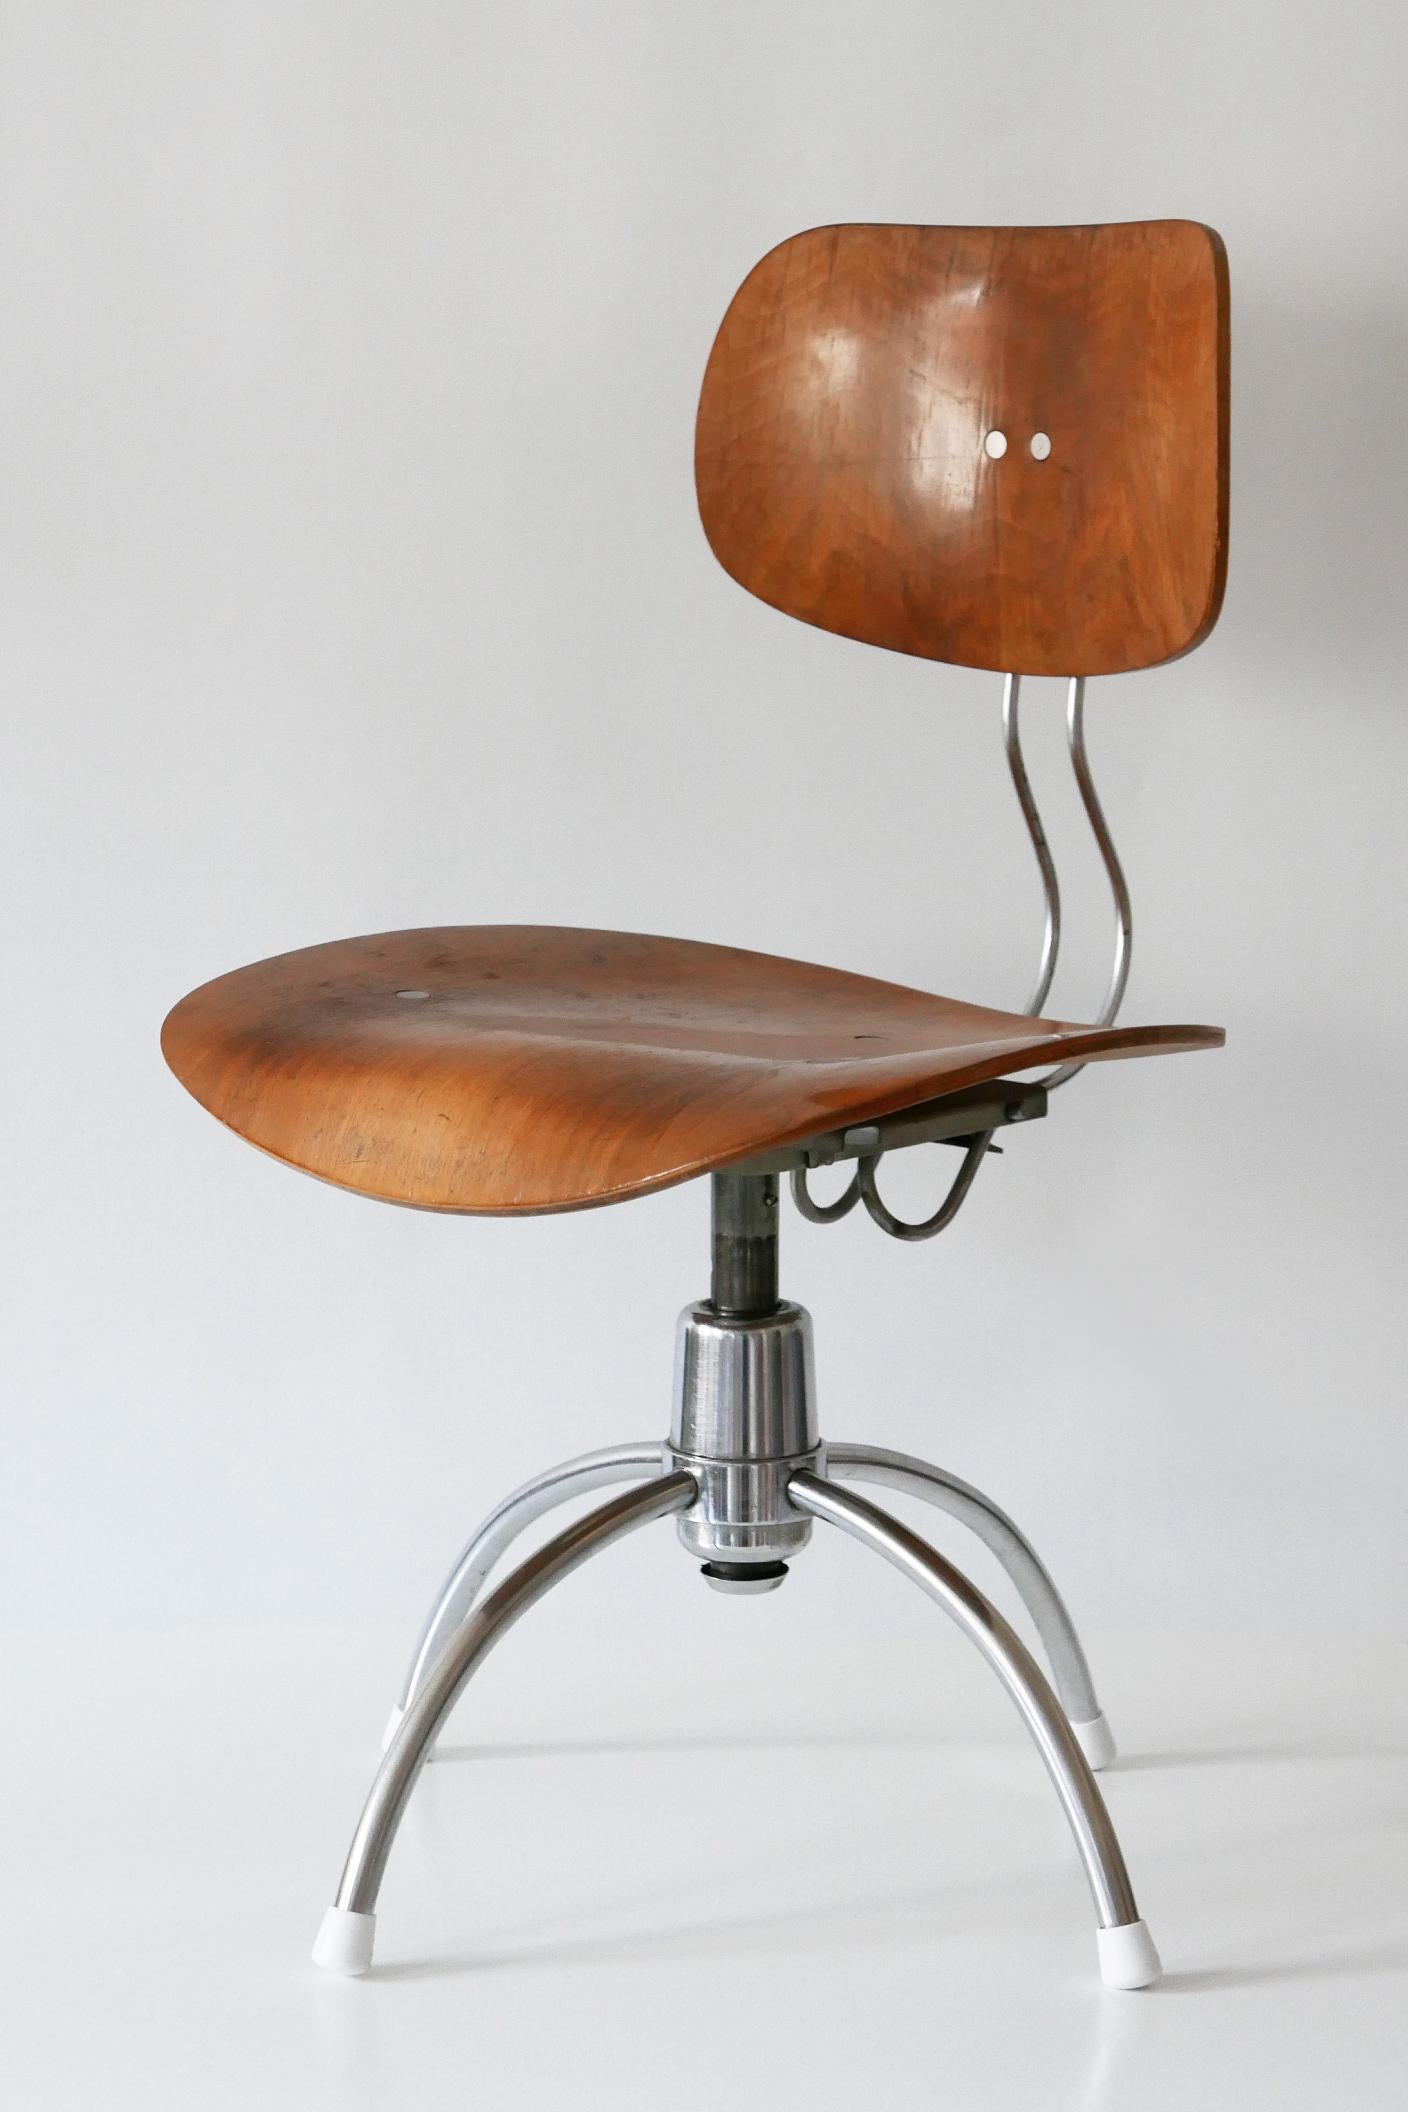 Steel Midcentury Spring Swivel Office Chair SE 40 by Egon Eiermann for Wilde + Spieth